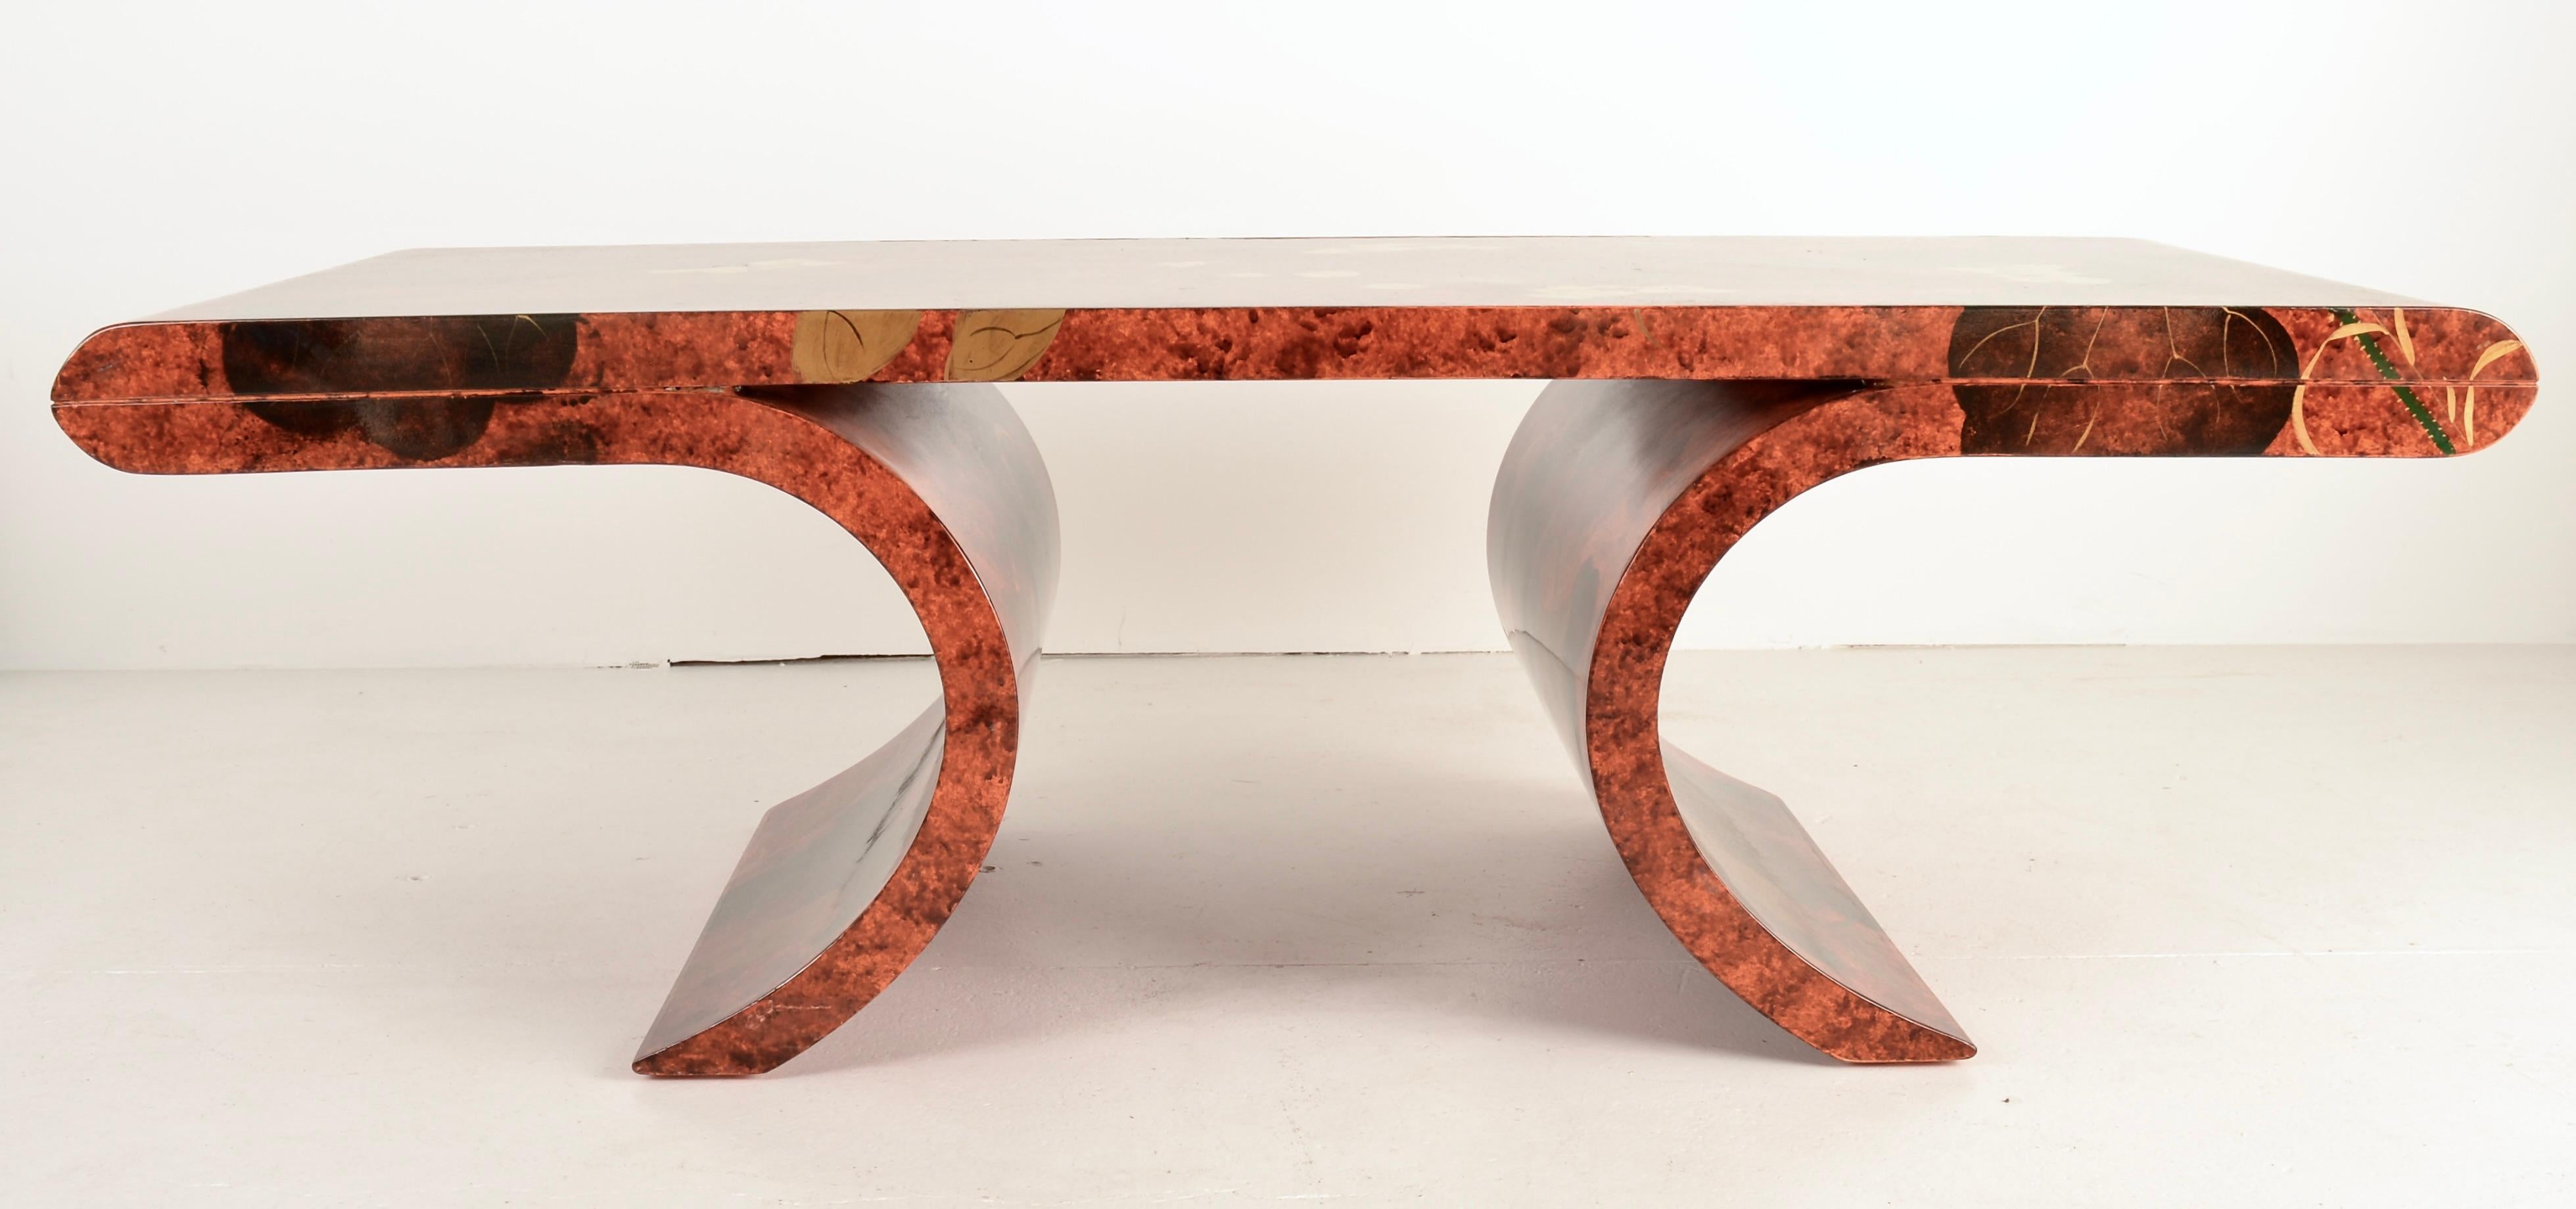 Die wunderschöne handgemalte Dekoration auf einem Hintergrund aus Ölflecken macht diesen Tisch zu einem echten Hingucker. Eine attraktive skulpturale Form trägt zu seiner Attraktivität bei. Der Tisch wurde mit einer neuen Lackschicht in Hochglanz